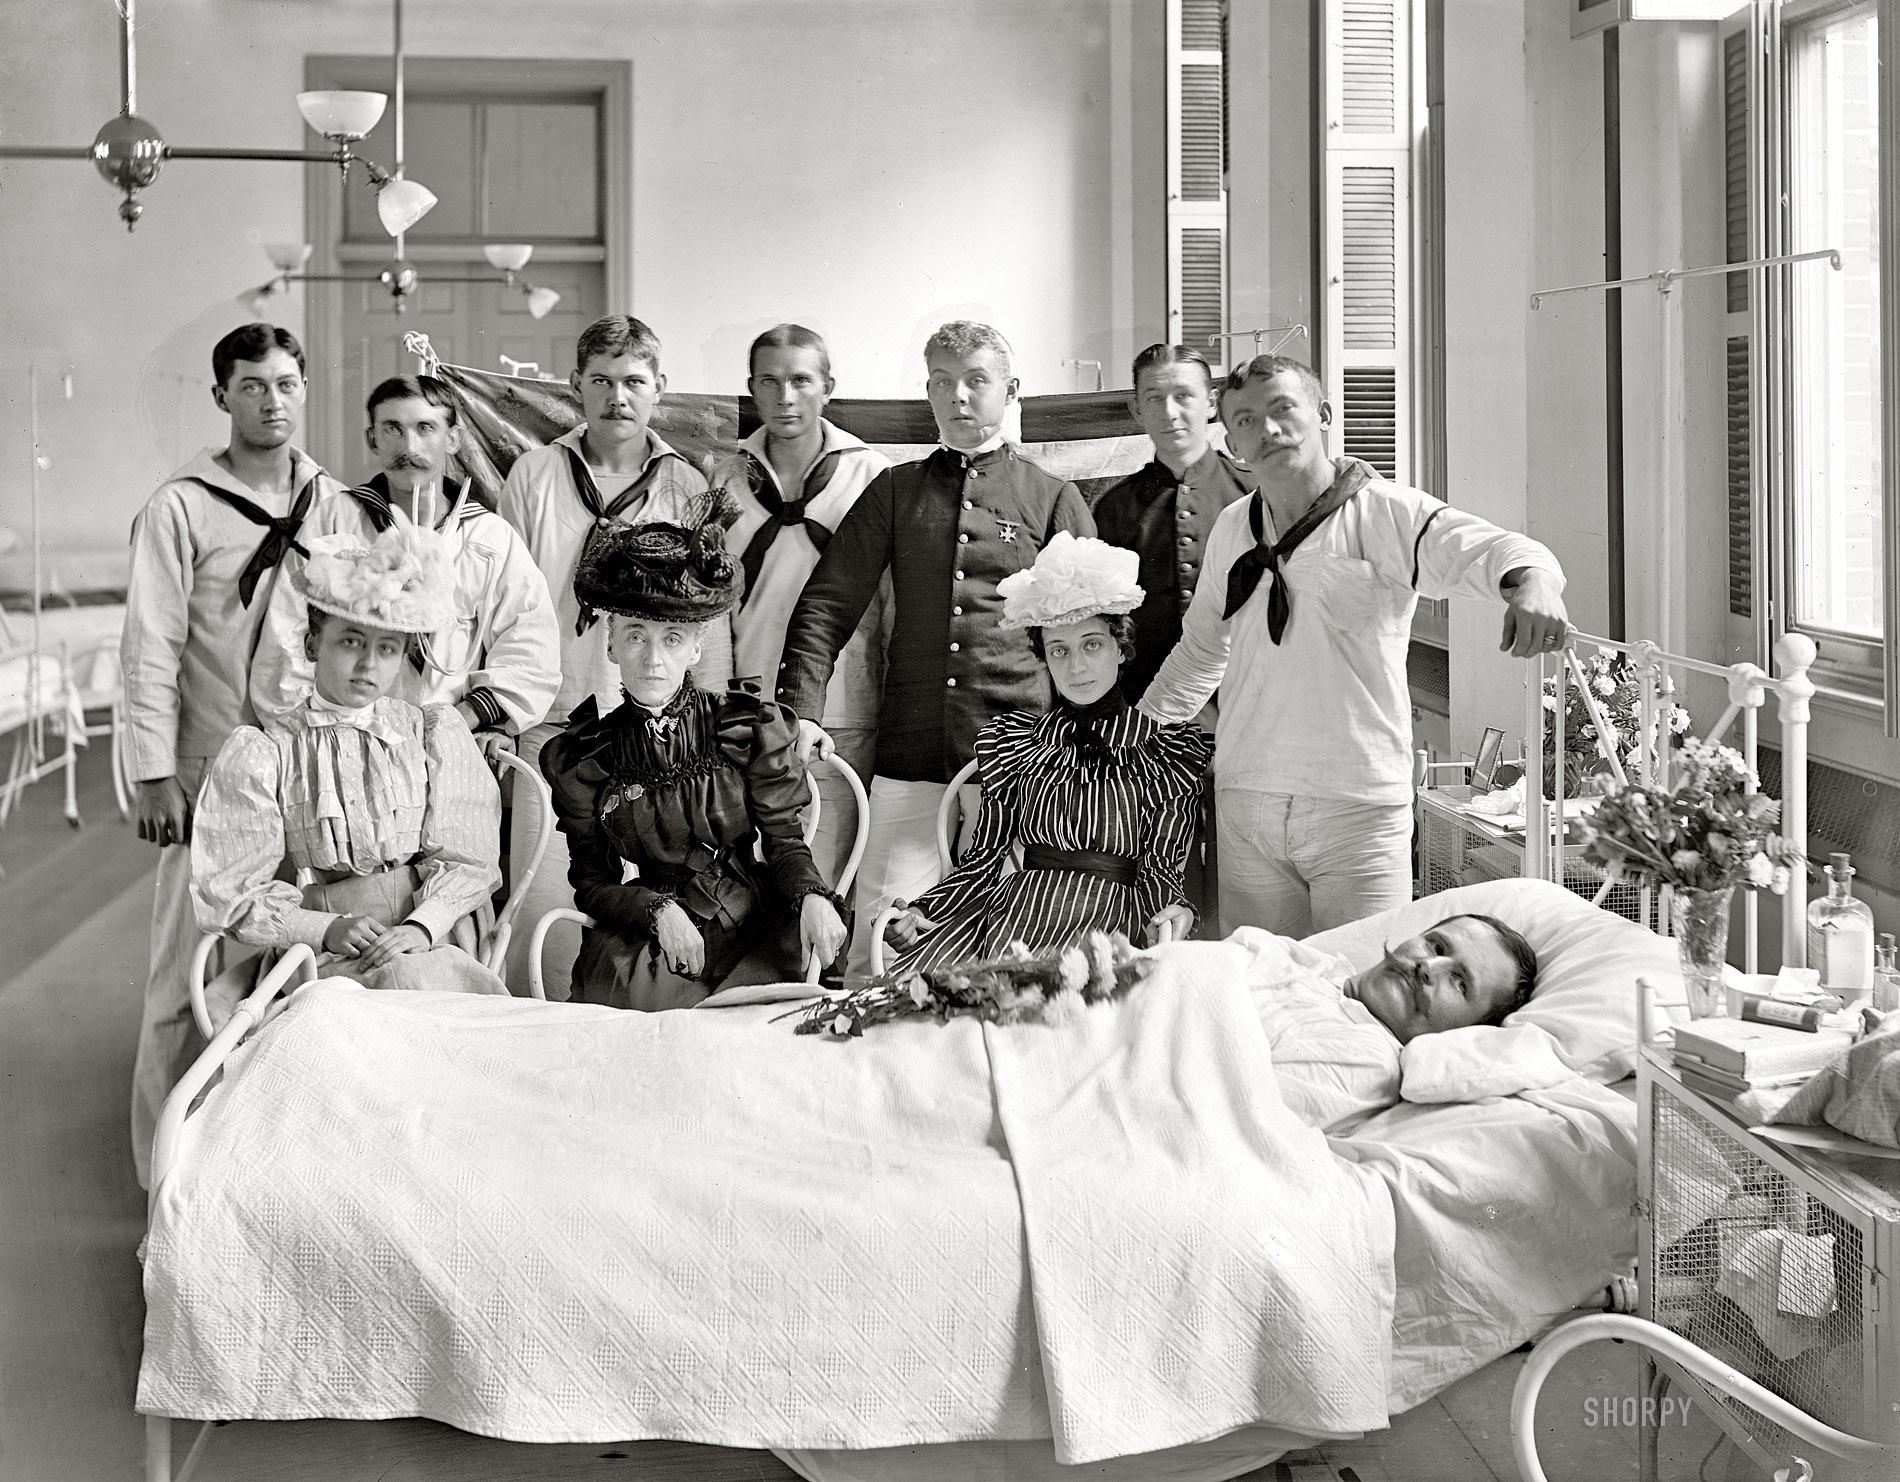 Fotografías antiguas de hospitales